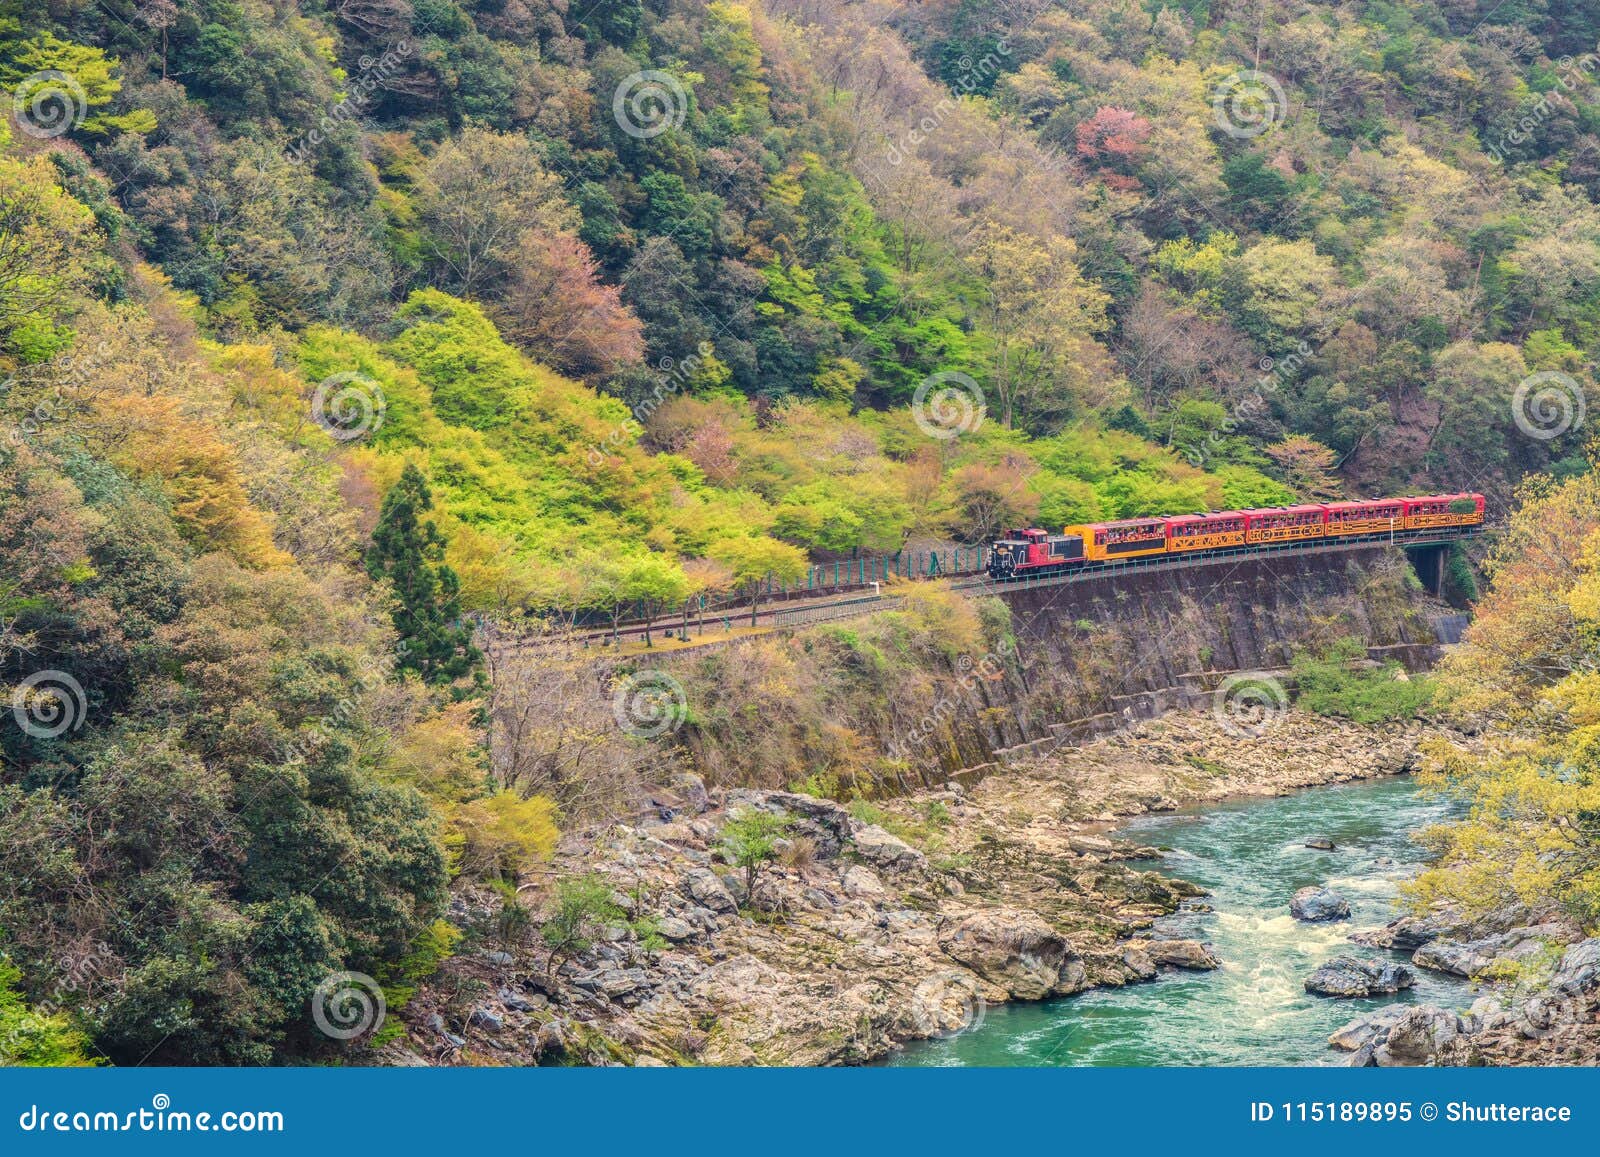 sagano romantic train running above river kyoto japan